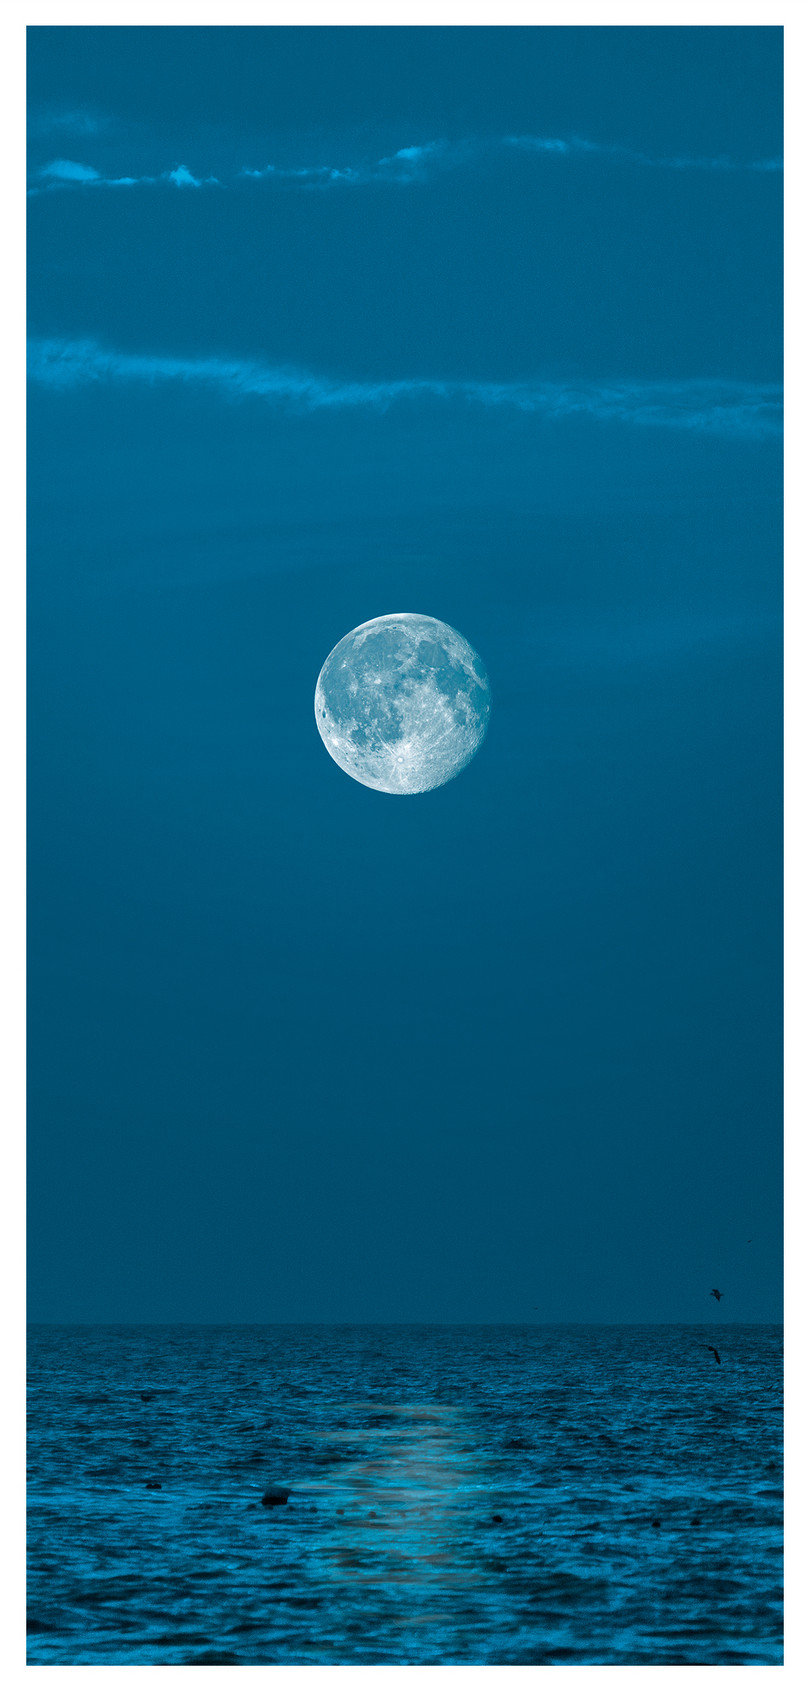 月圓之夜手機壁紙圖片素材 Jpg圖片尺寸1125 2436px 高清圖片 Zh Lovepik Com